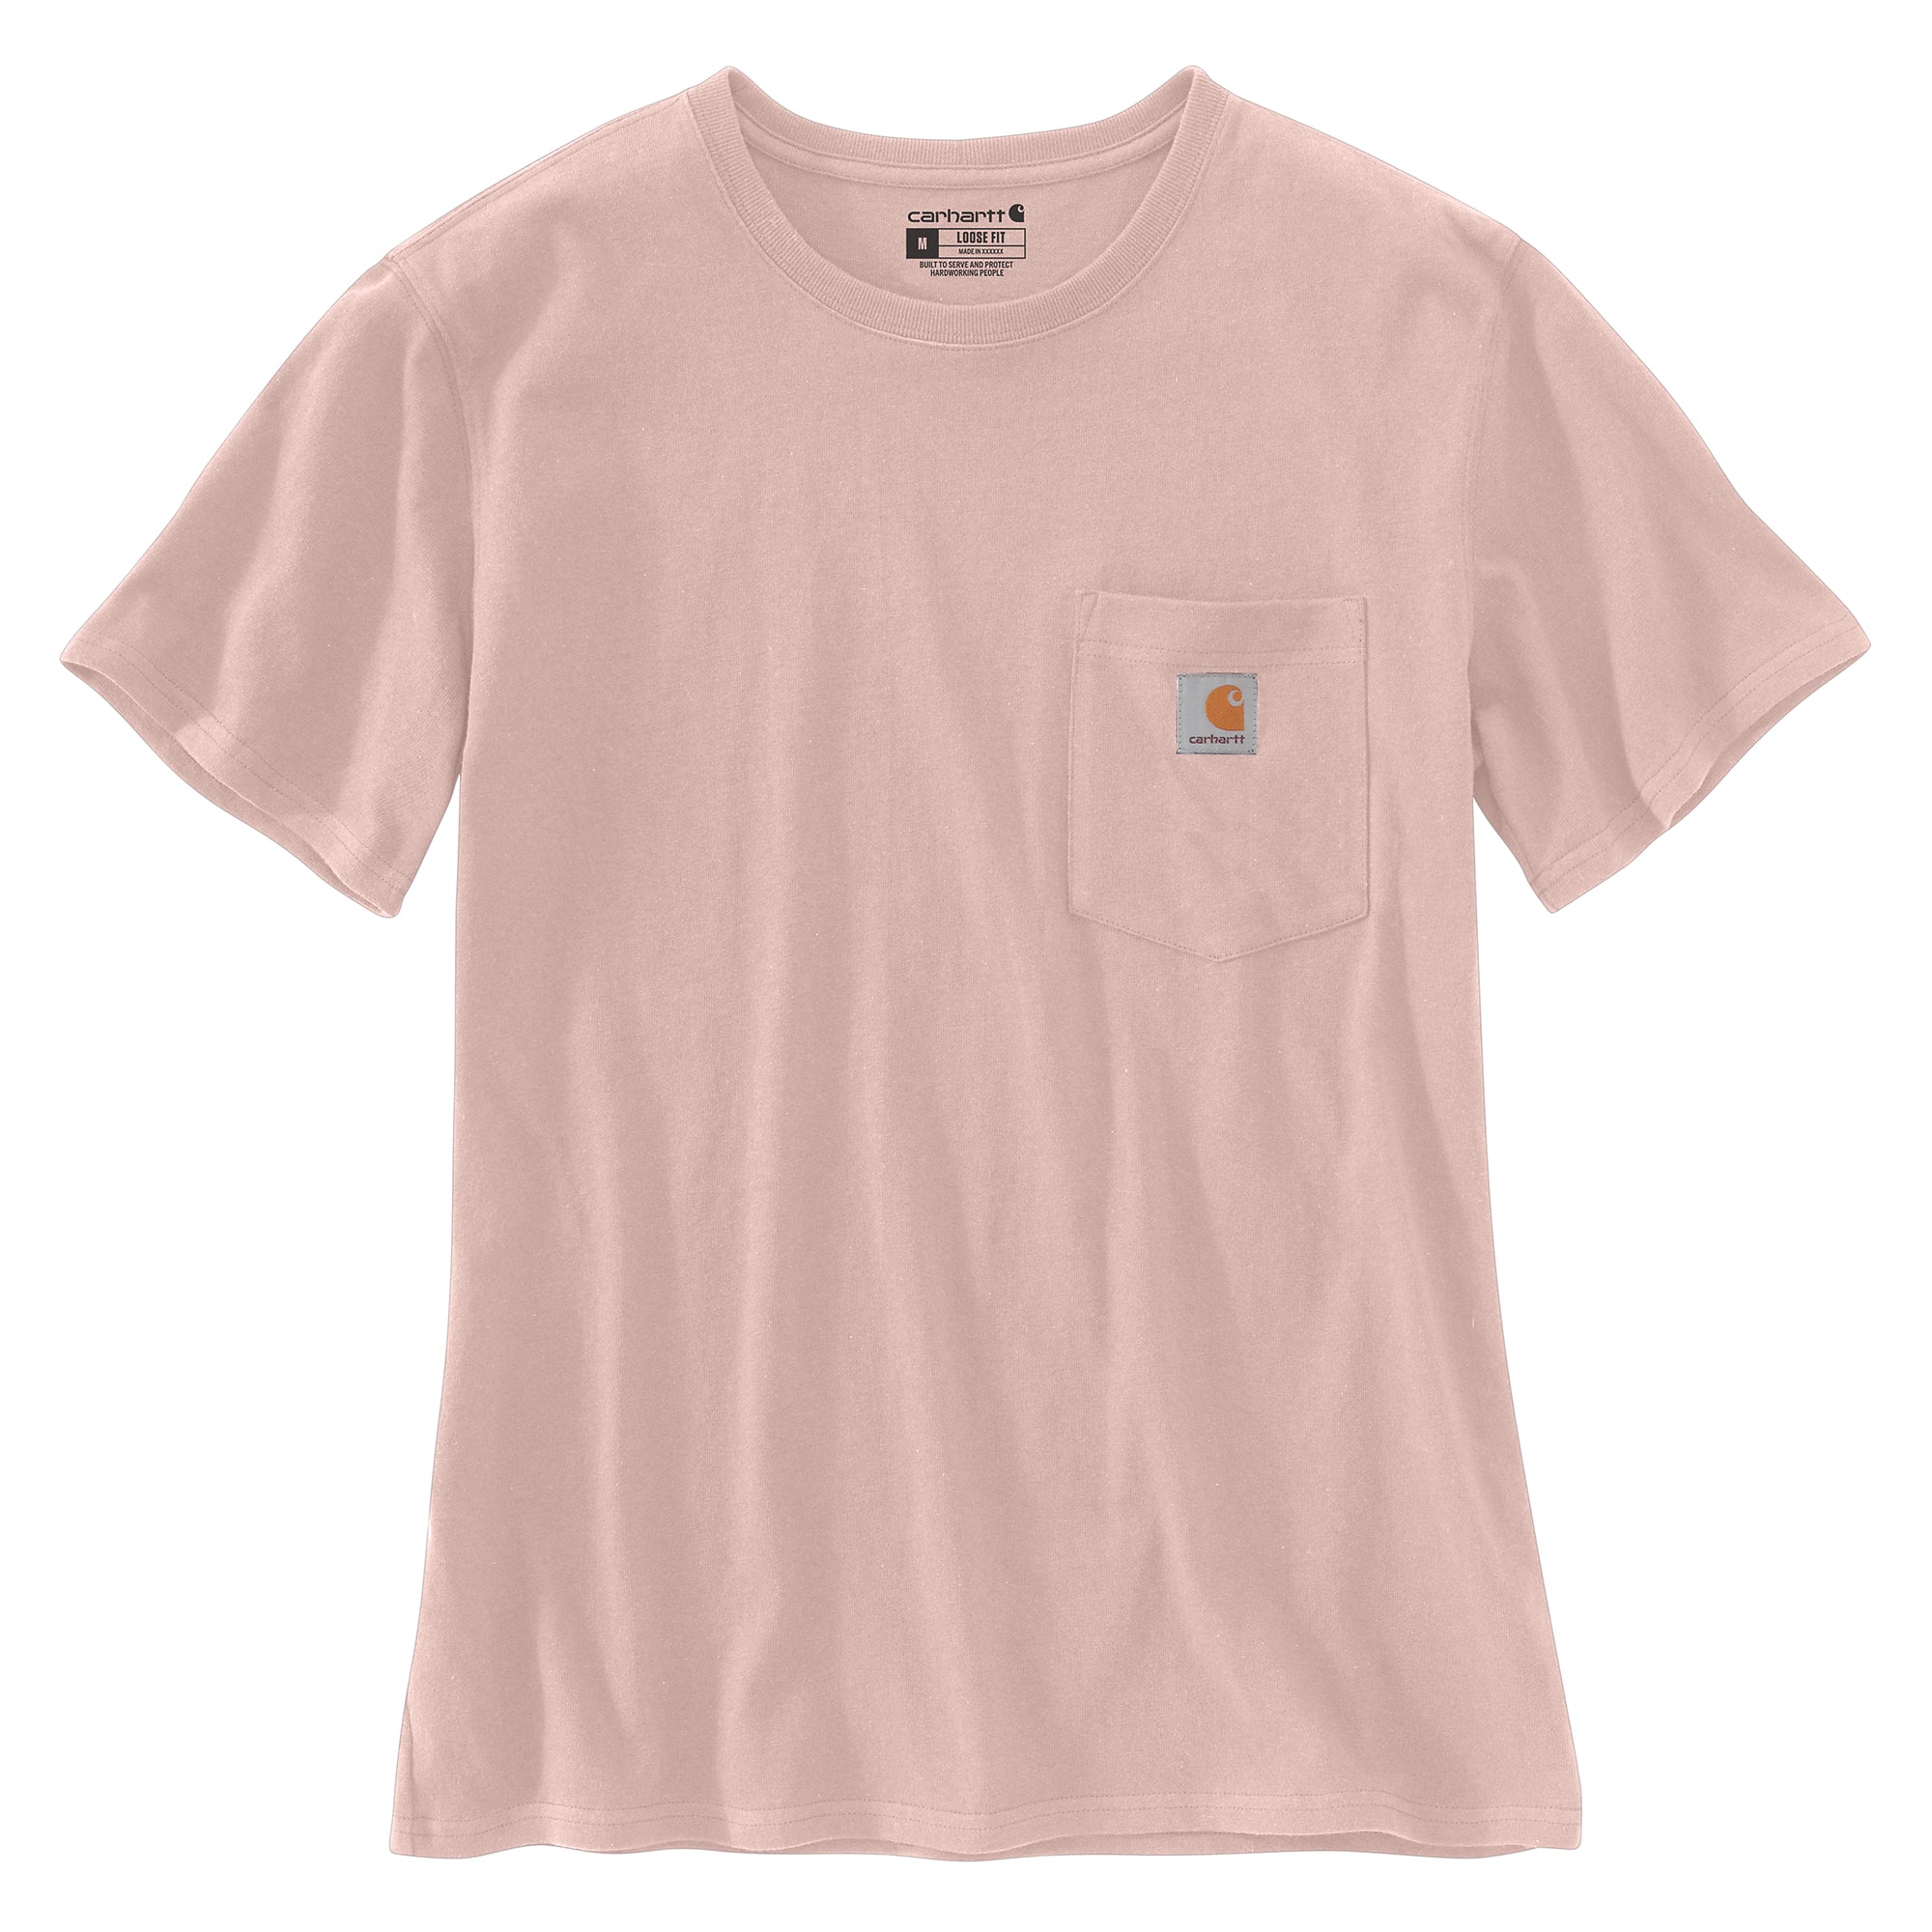 Carhartt K87 naisten t-paita, vaaleanpunainen